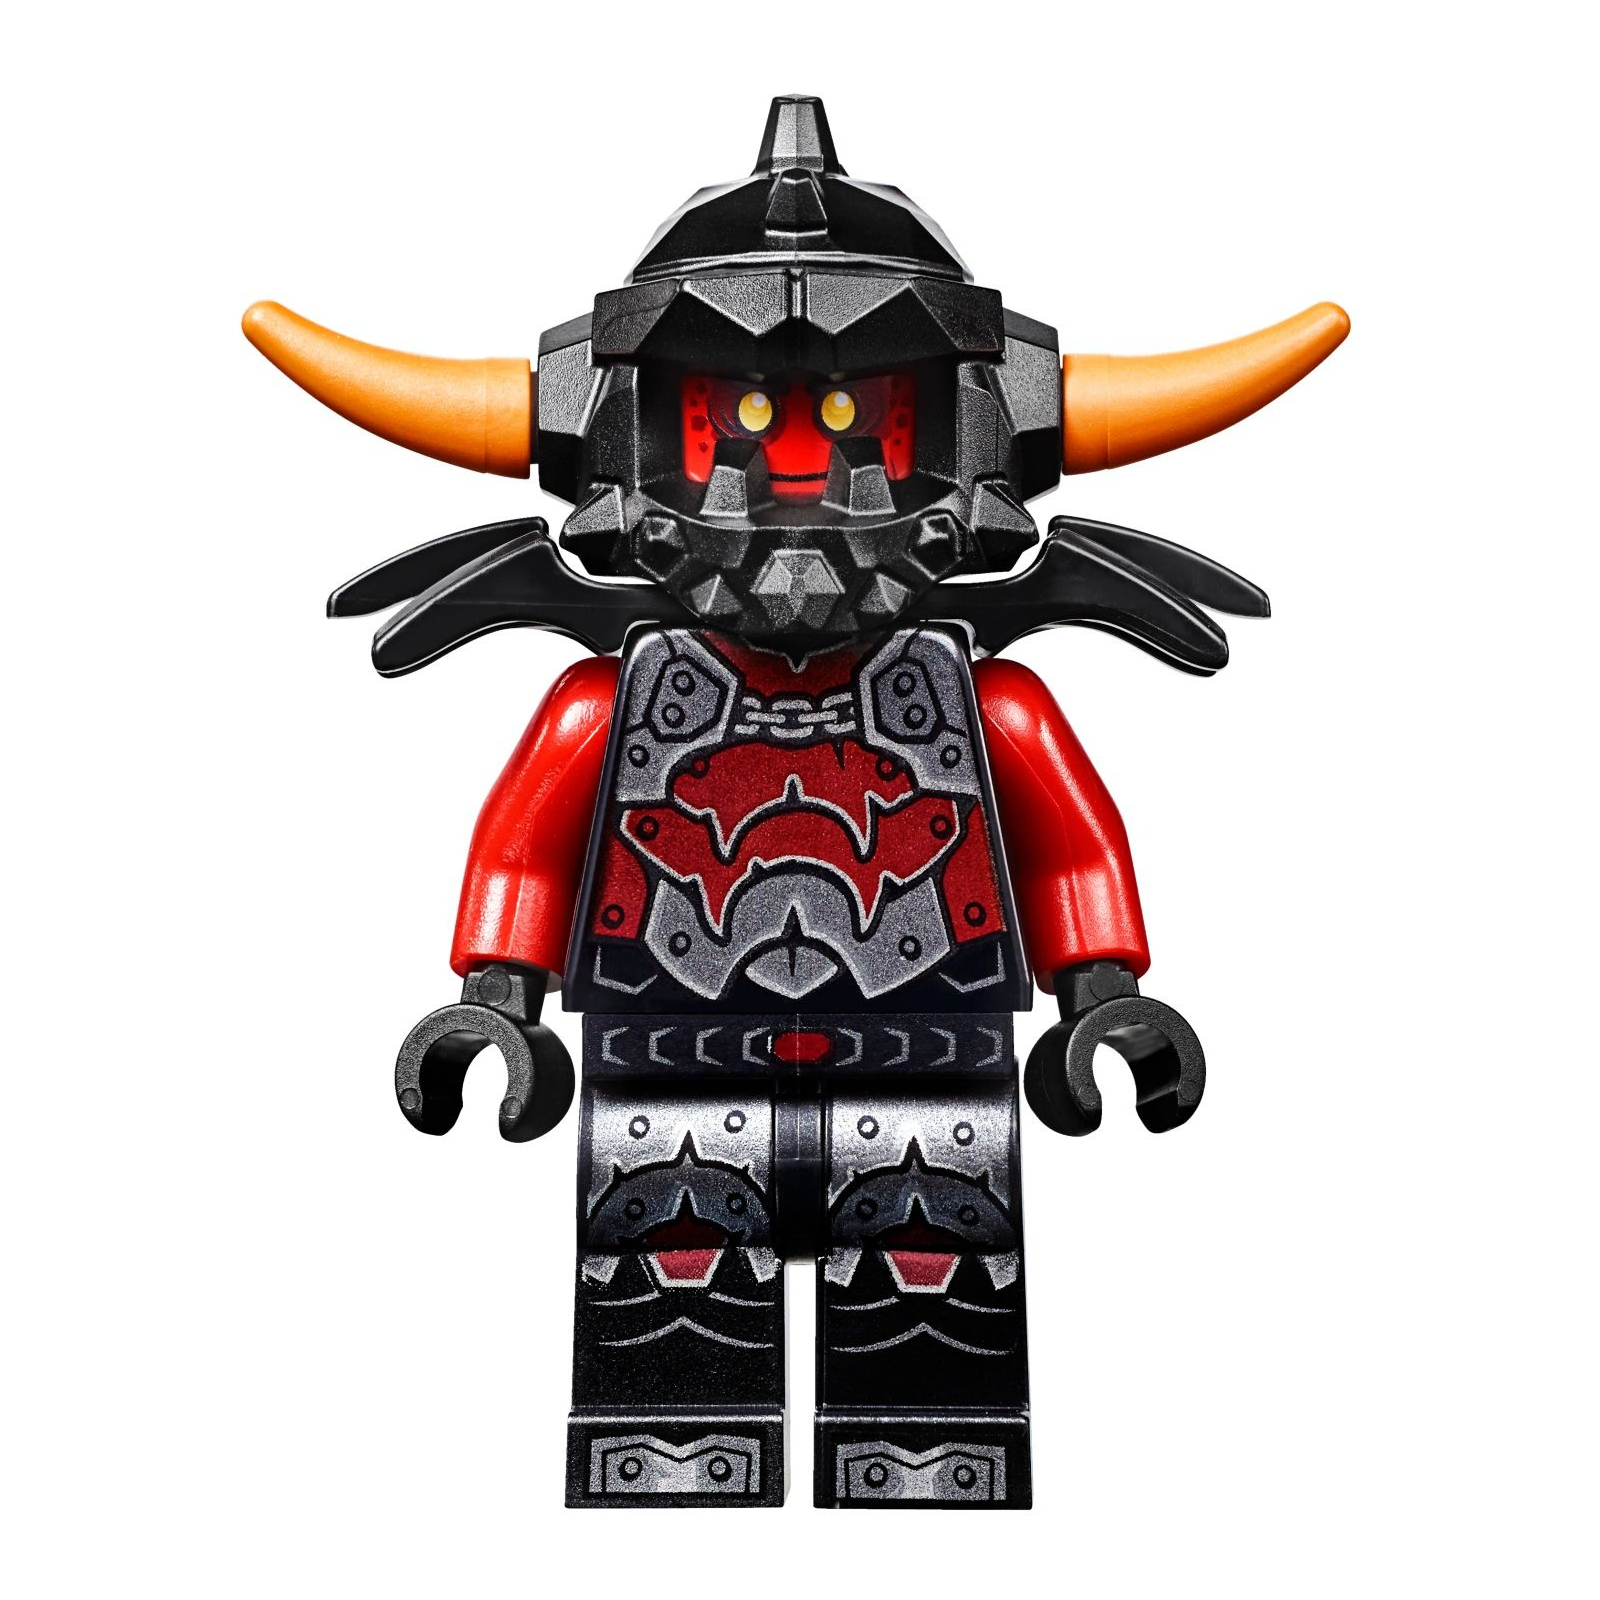 Конструктор LEGO Nexo Knights Устрашающий разрушитель Клэя (70315) изображение 8